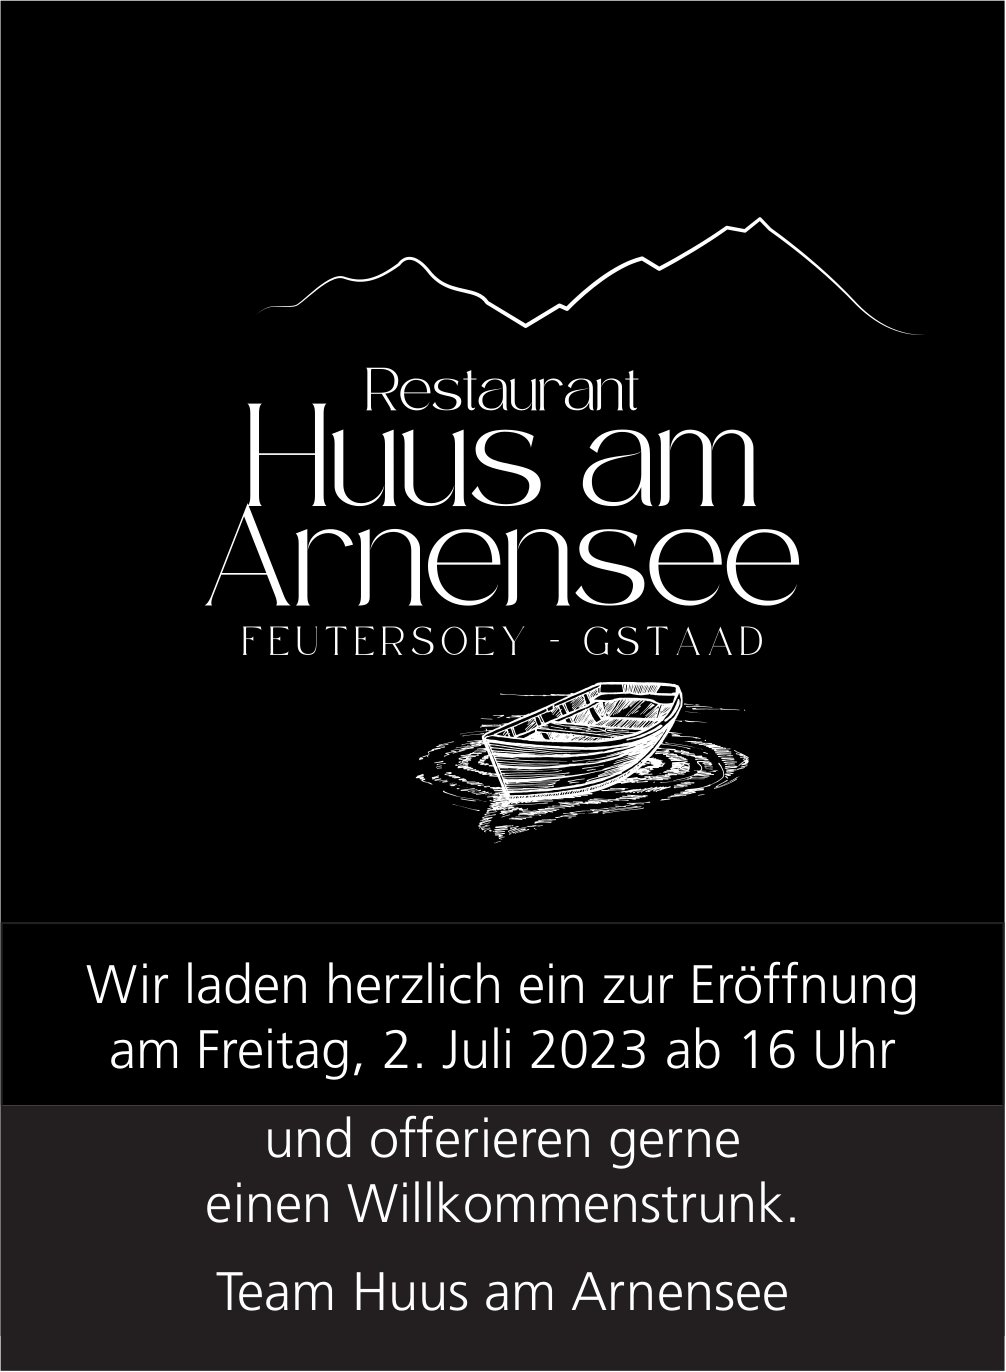 Wir laden herzlich ein zur Eröffnung und offerieren gerne einen Willkommenstrunk, 2. Juli, Restaurant Huus am Arnensee, Feutersoey